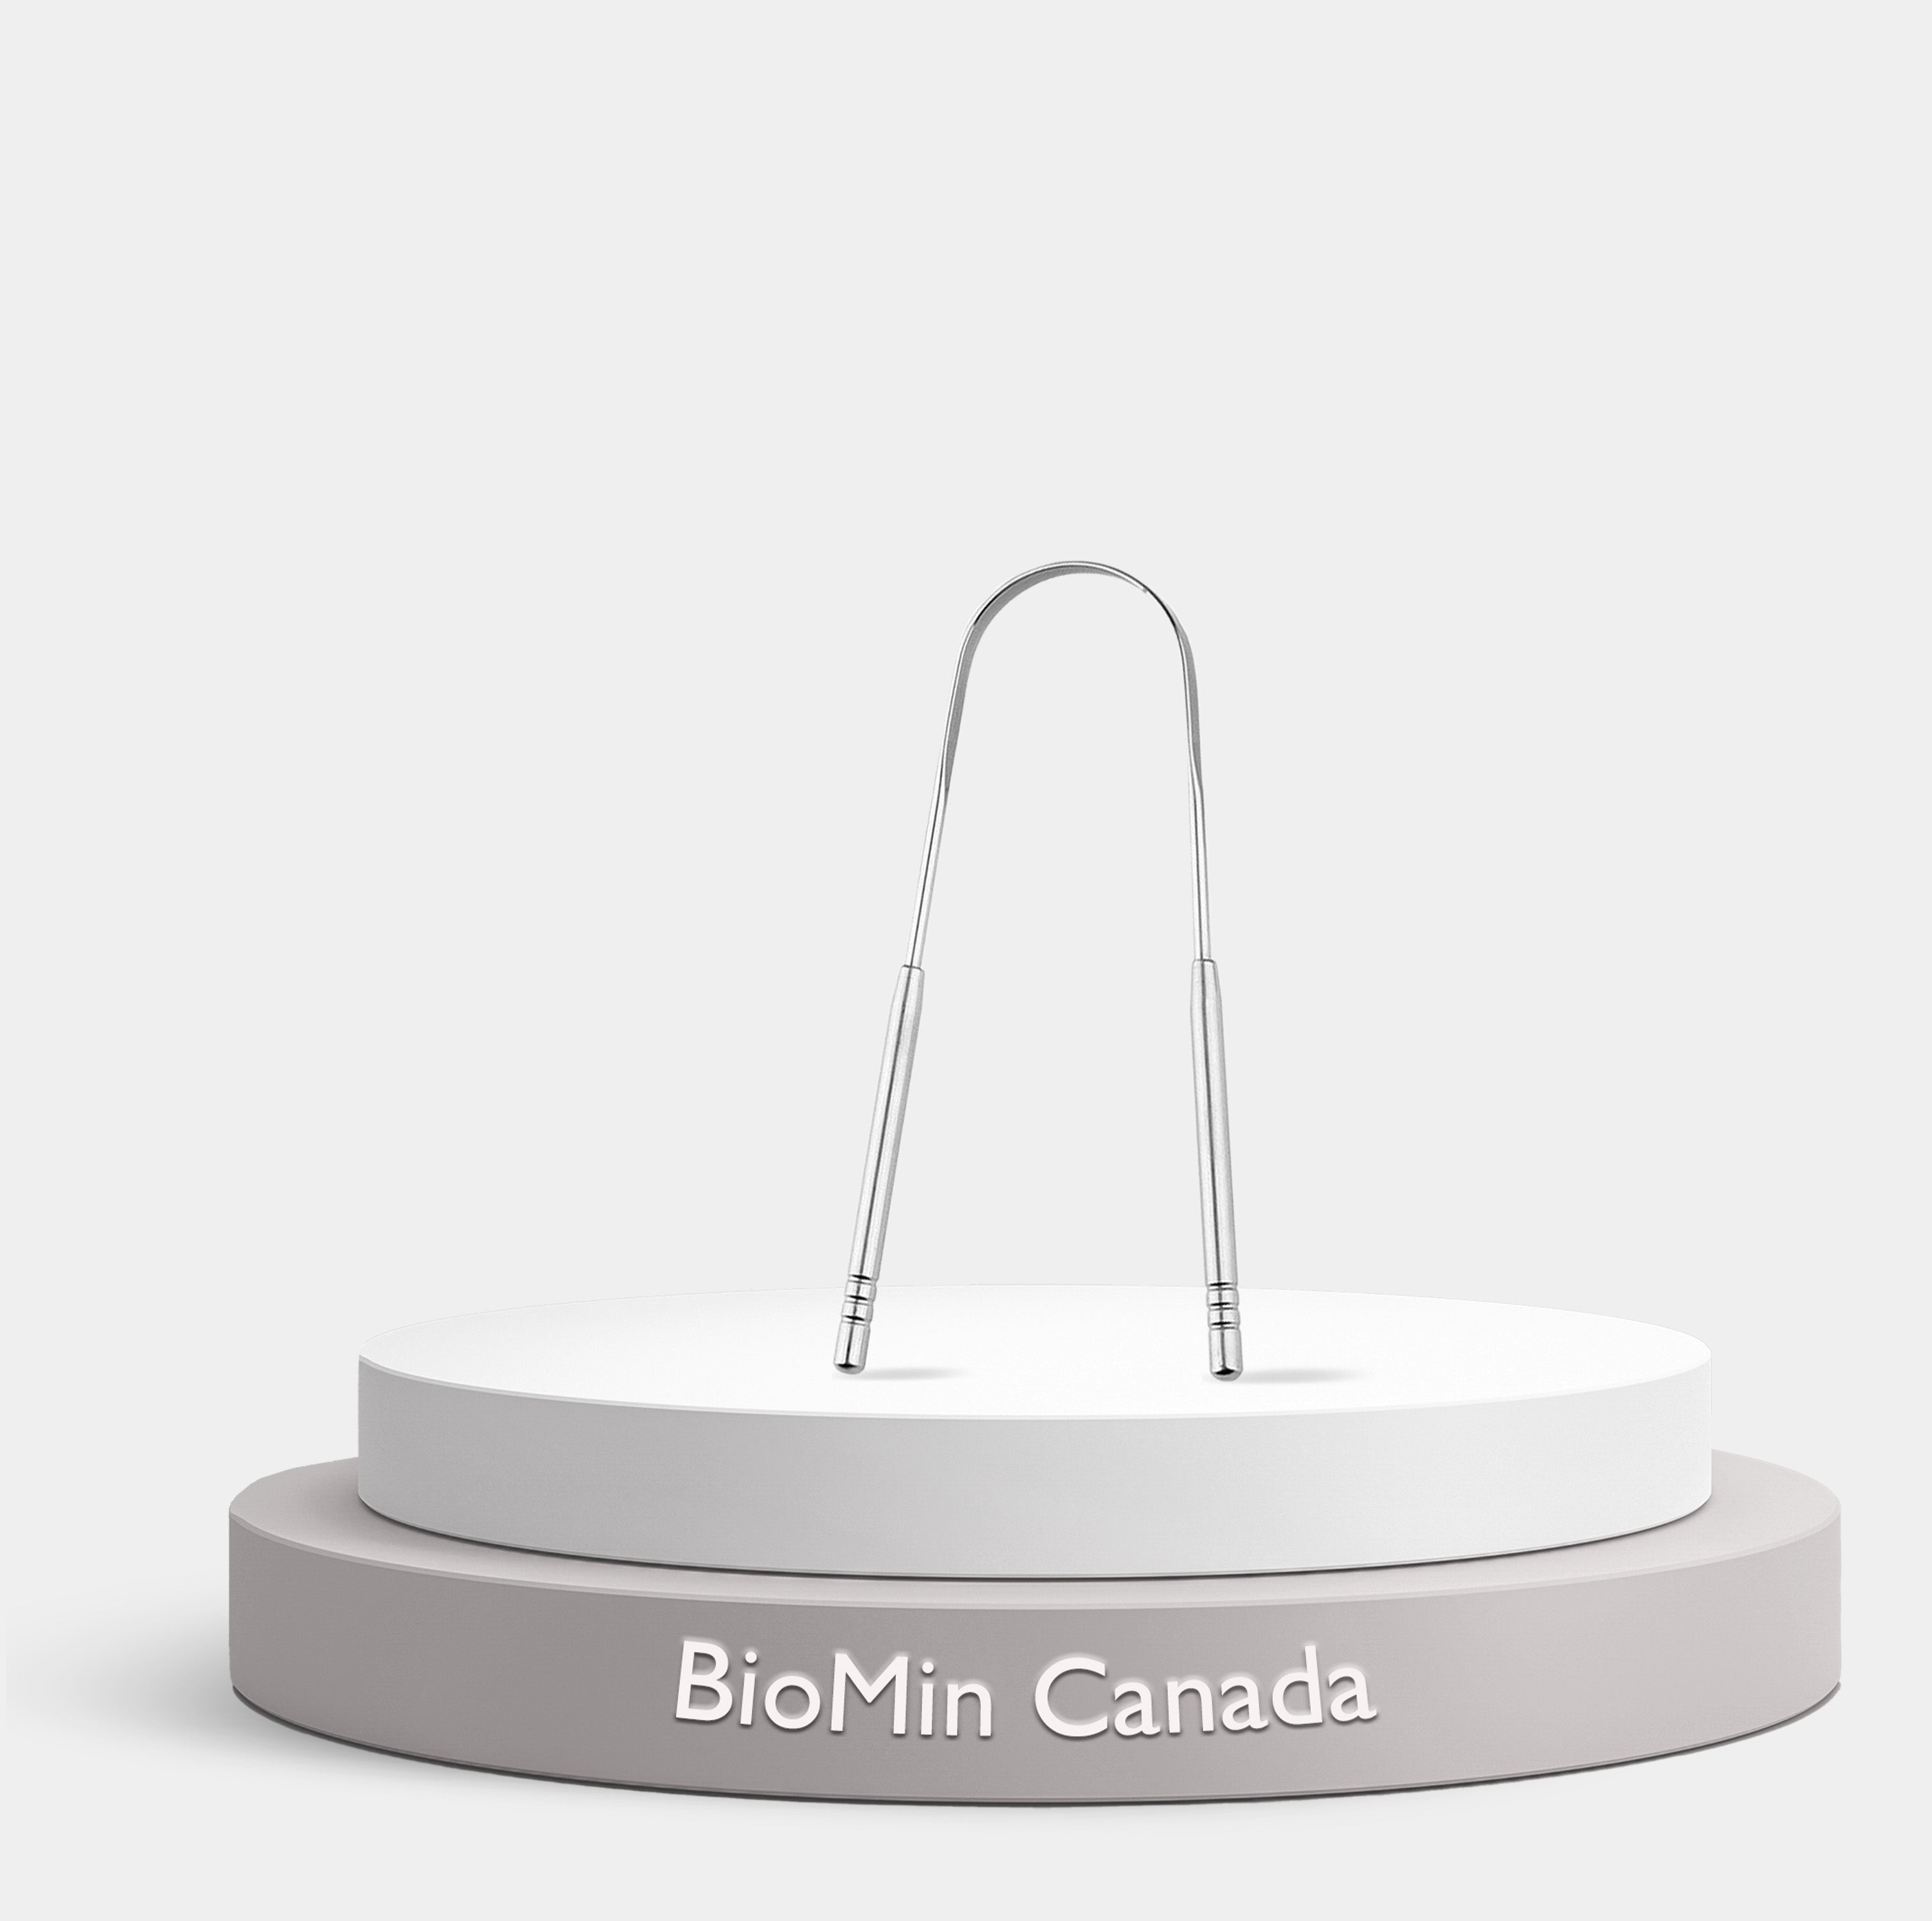 BioMin F Dental Kit